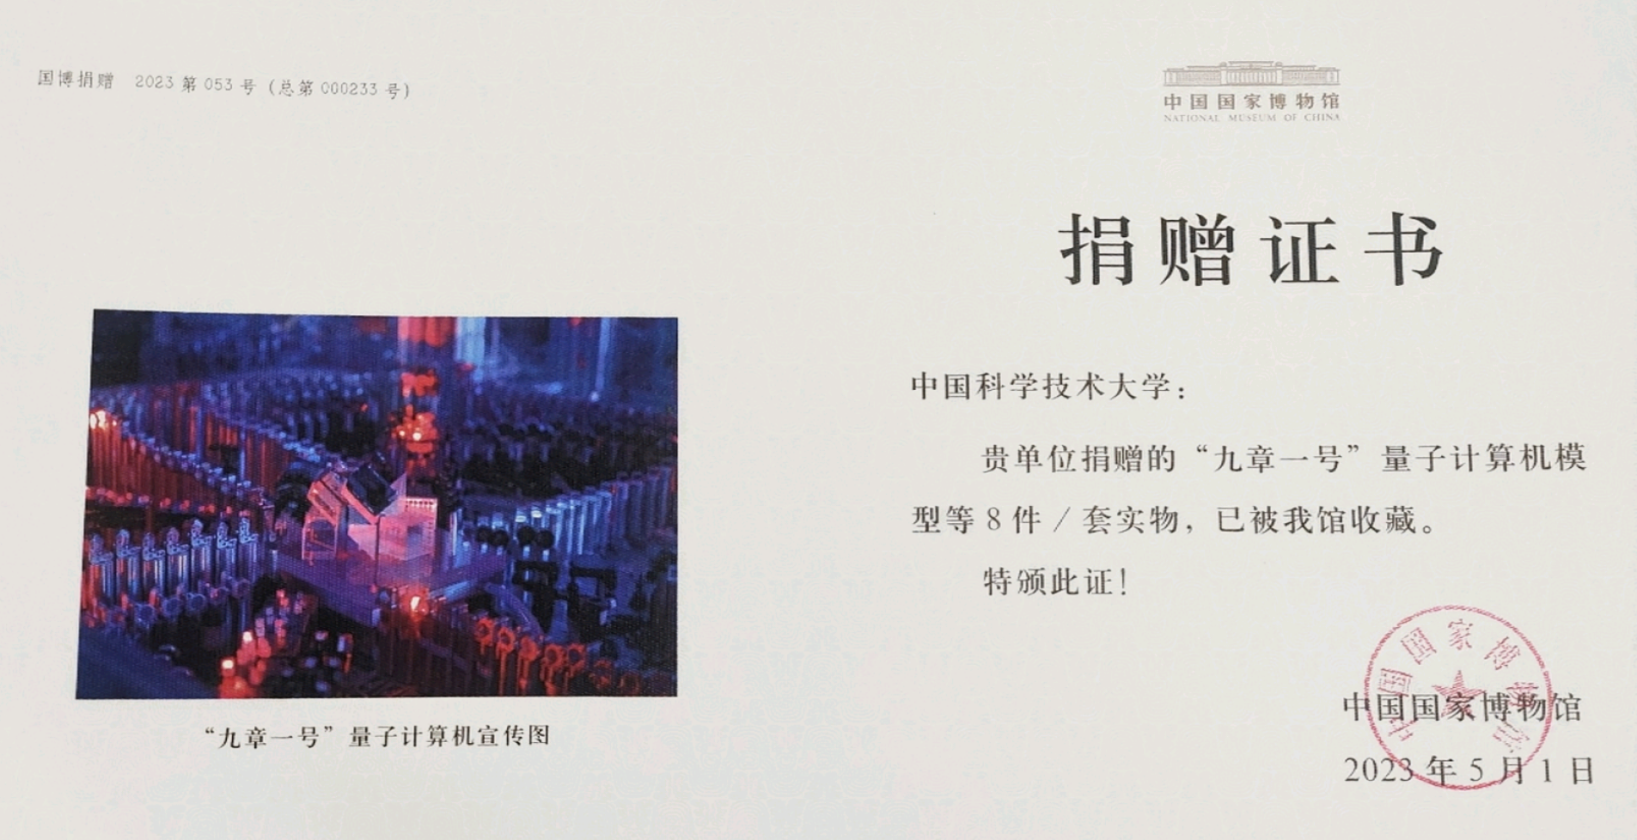 量子计算机首次入藏国家博物馆2.png